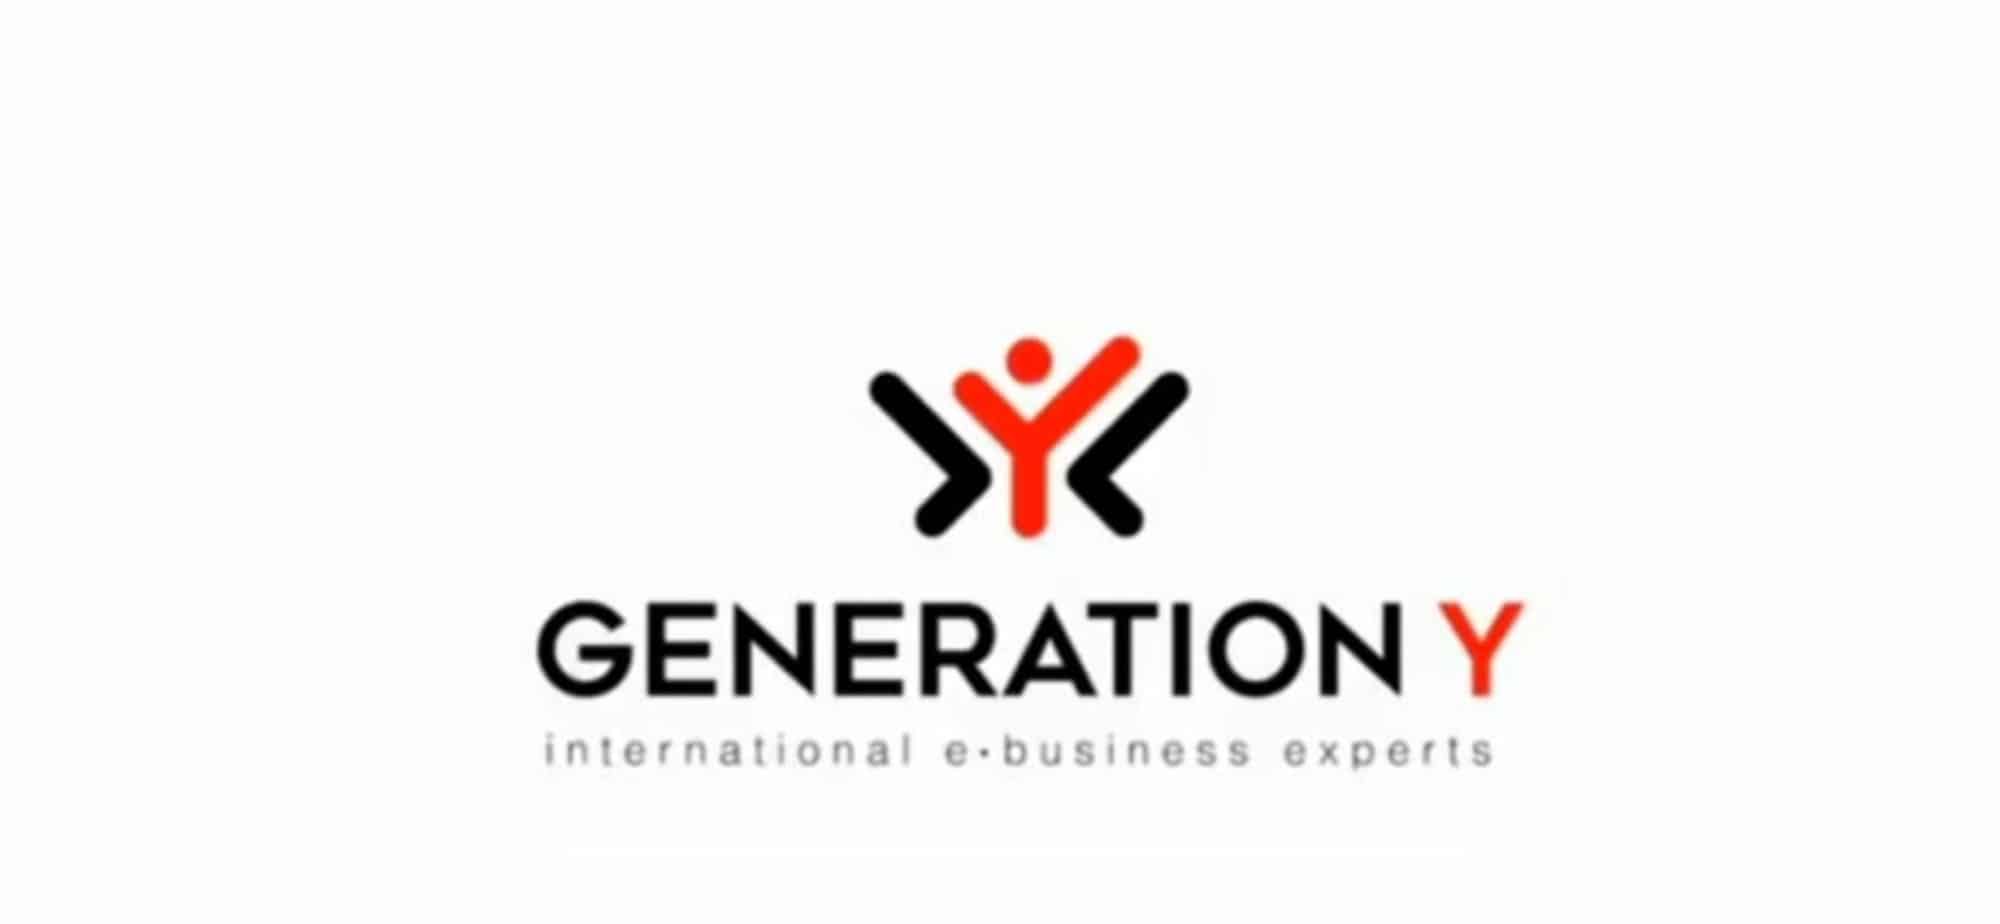 Η ελληνική πολυεθνική εταιρεία, Generation Y